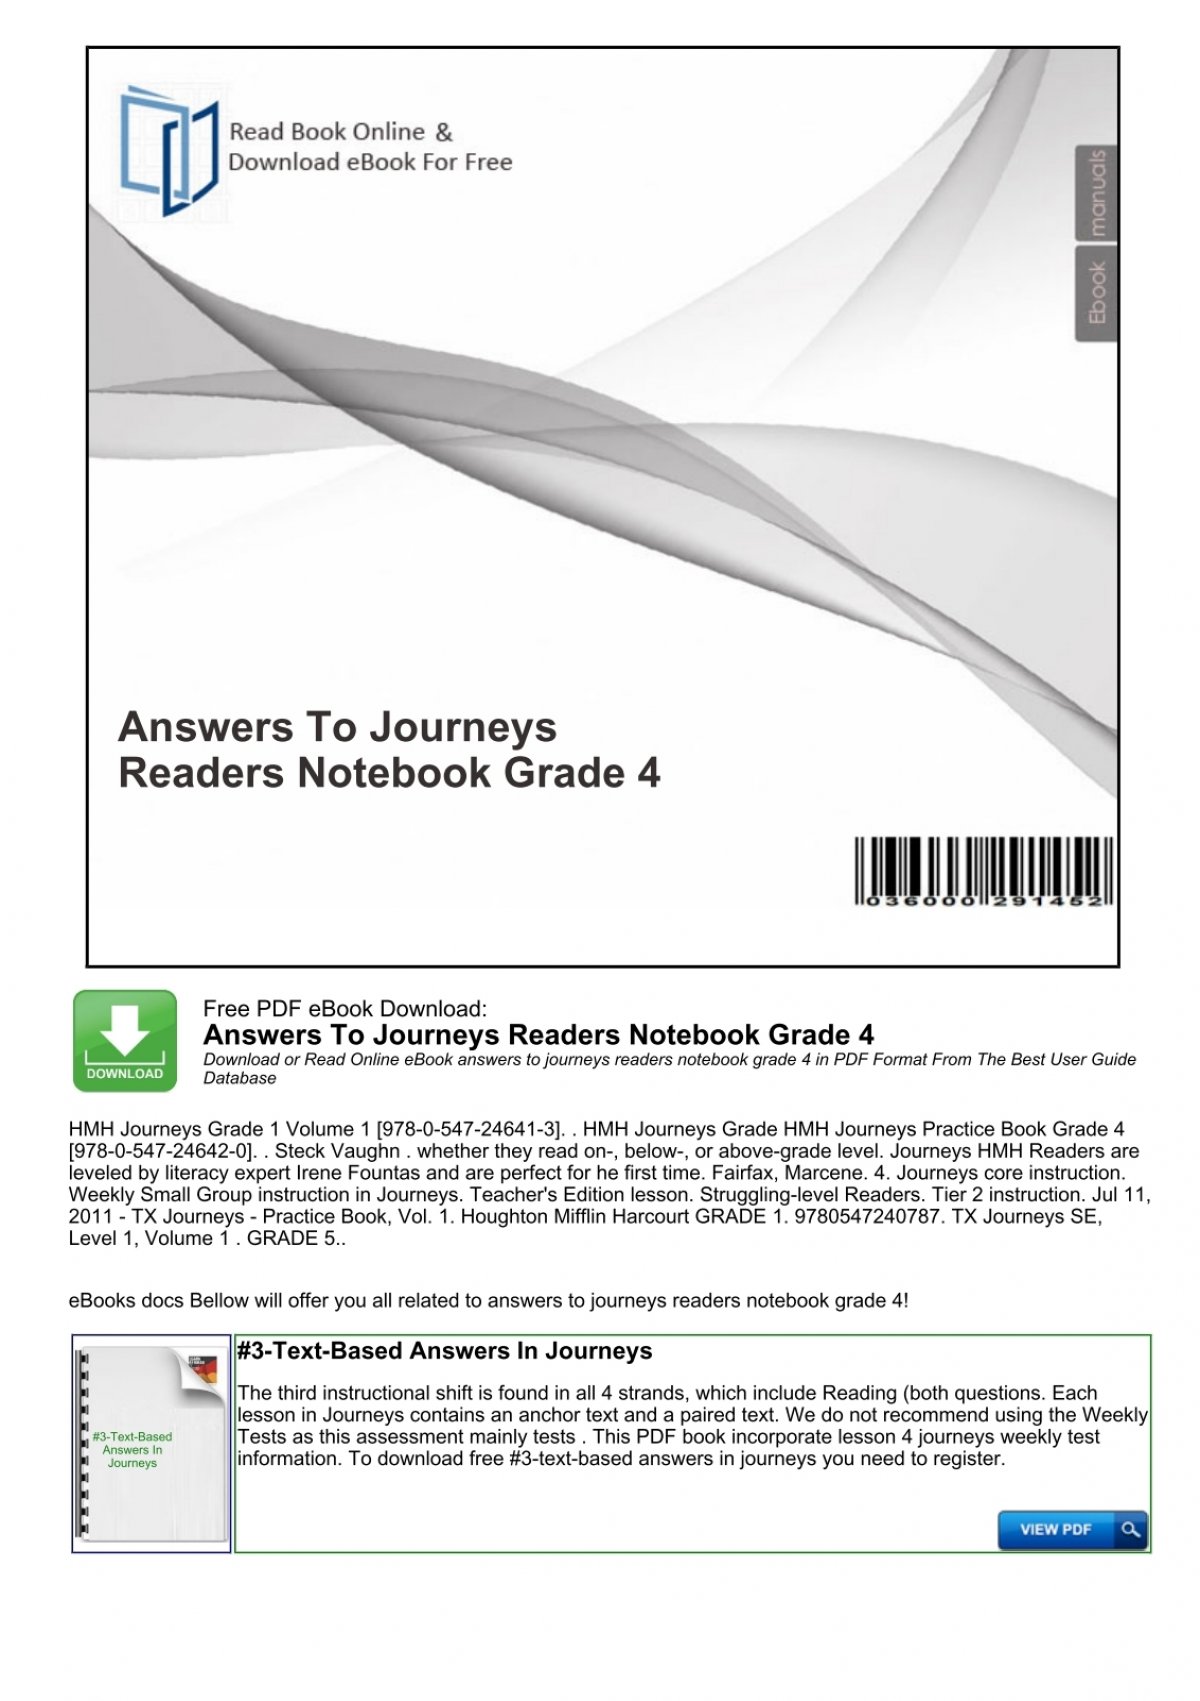 journeys reader's notebook grade 4